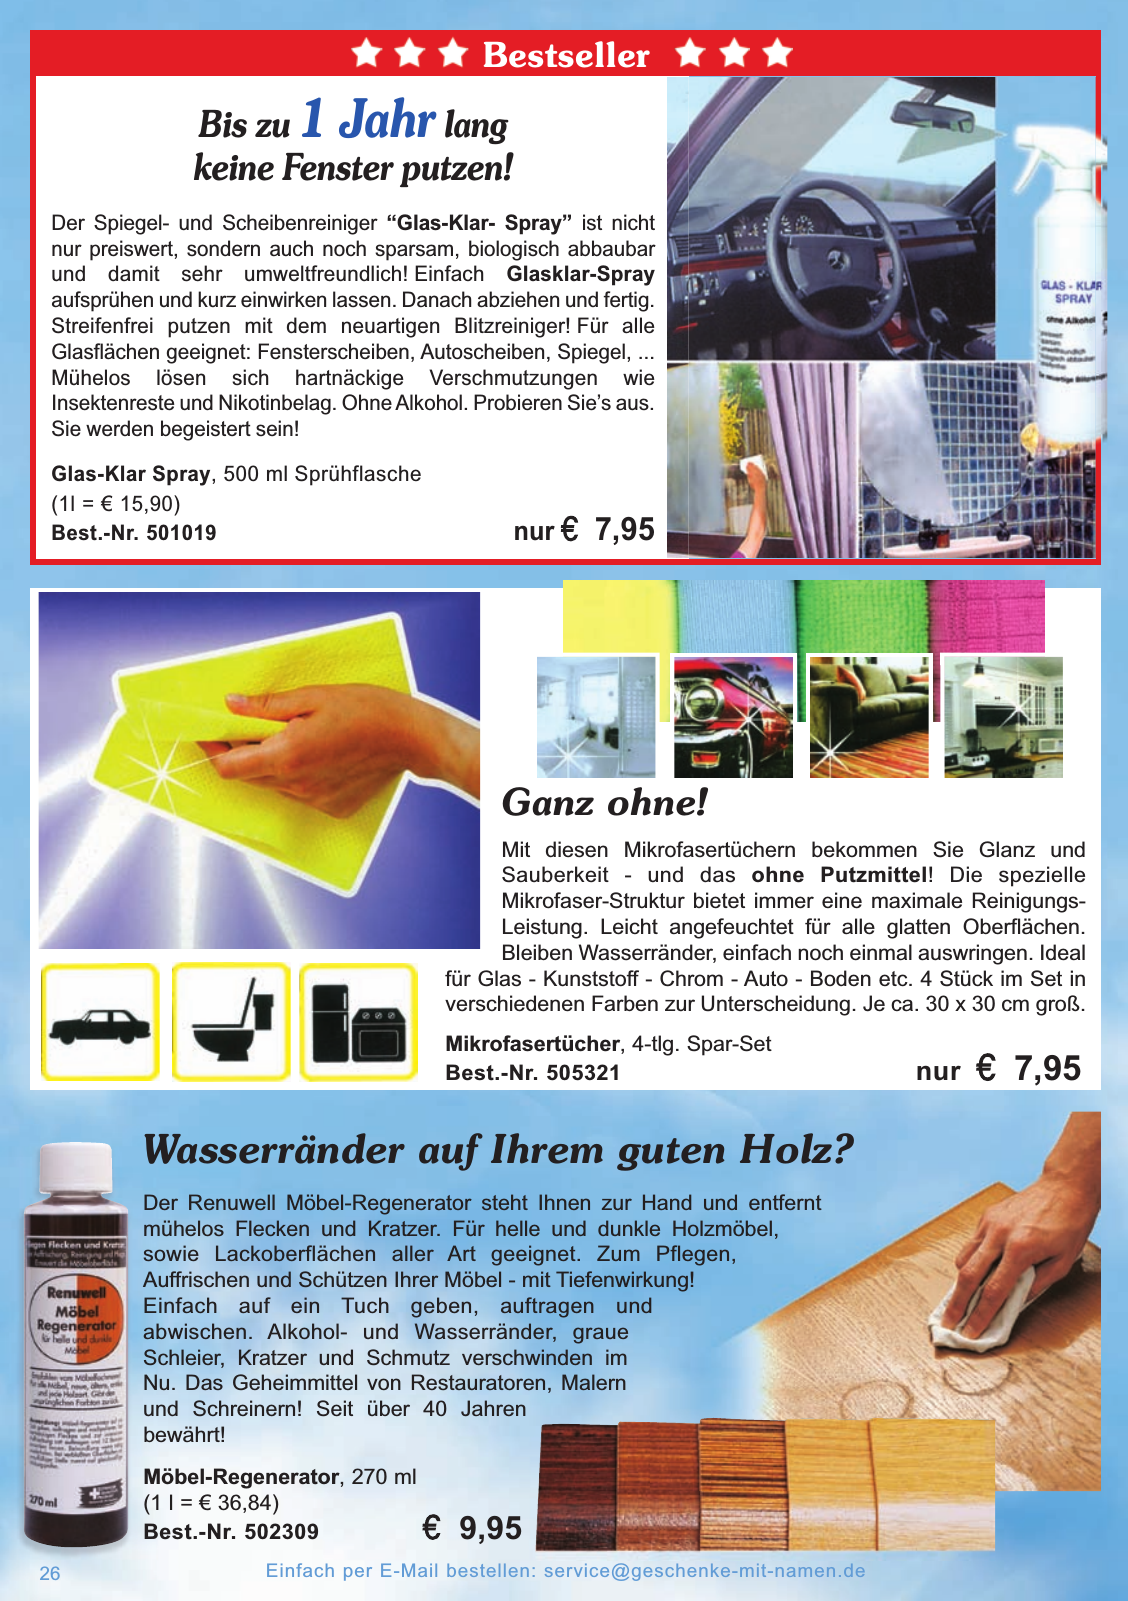 Vorschau Katalog 2015/2016 Seite 26